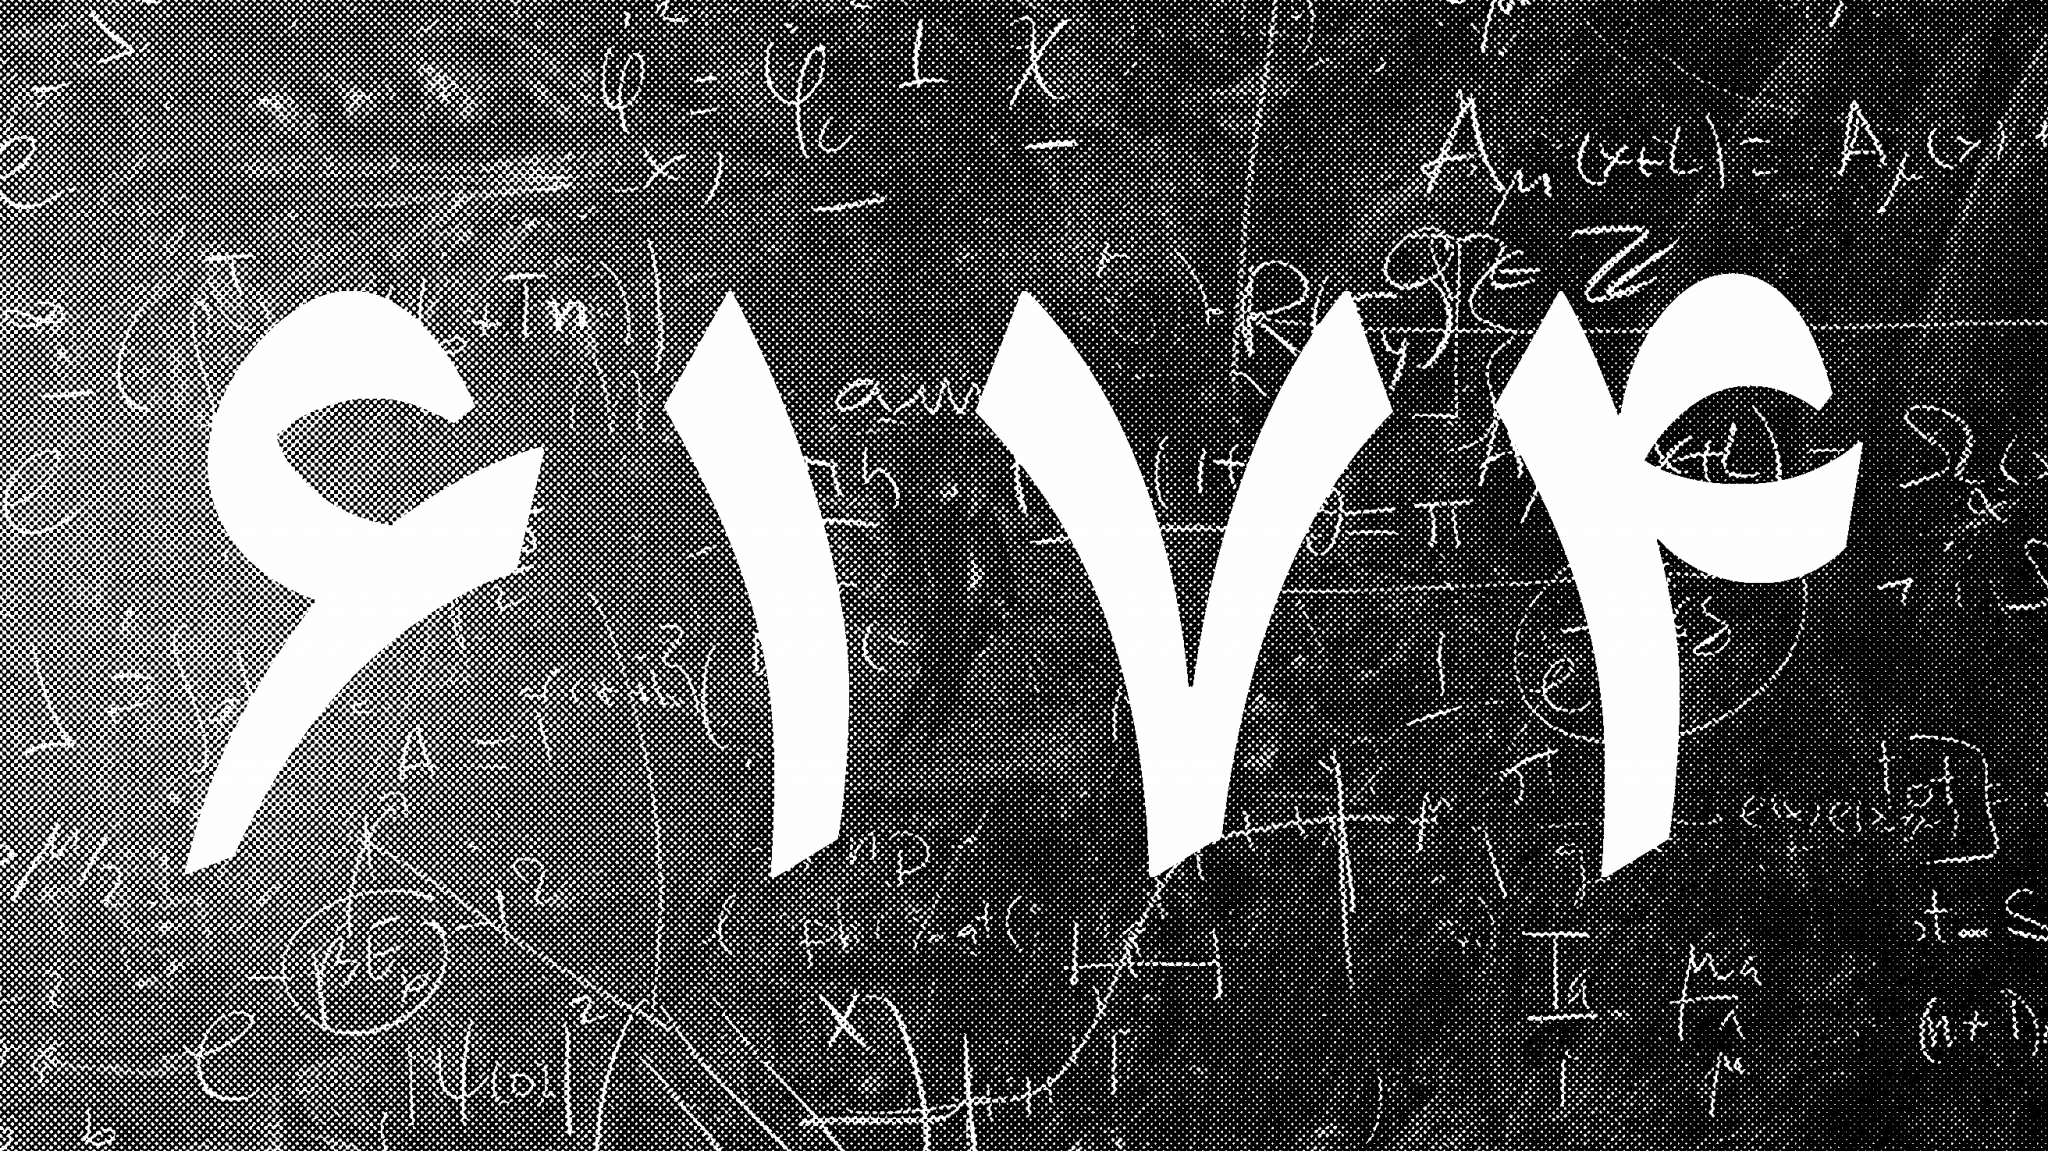 ۶۱۷۴، عدد مرموزی که بیش از هفت دهه ریاضیدانان را جذب خود کرده